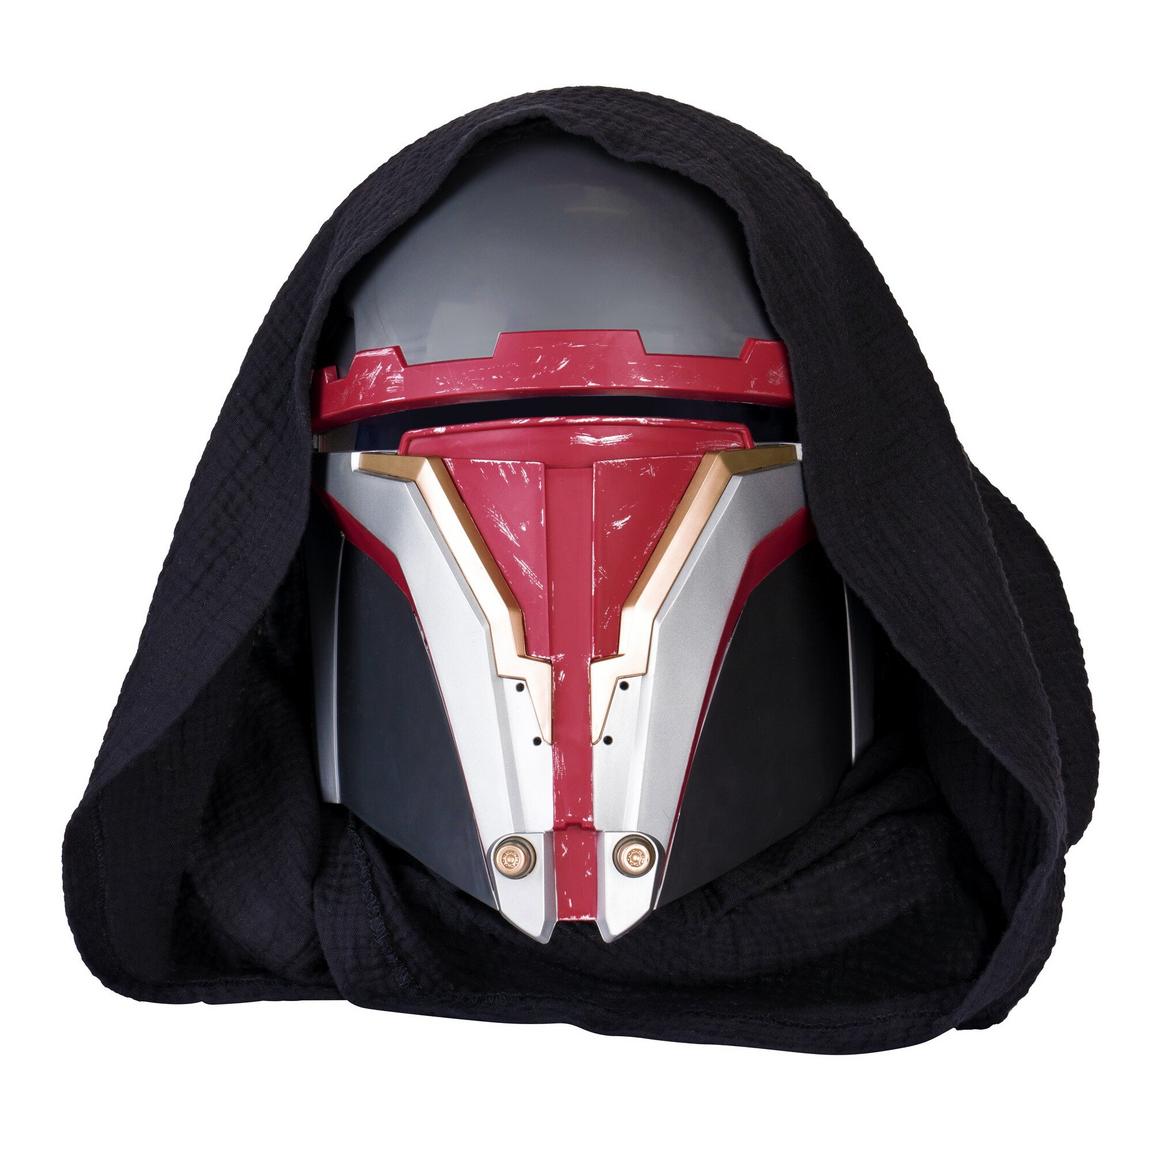 azwares-Star-Wars-Darth-Revan-Adult-Helmet?$pdp2x$.jpg